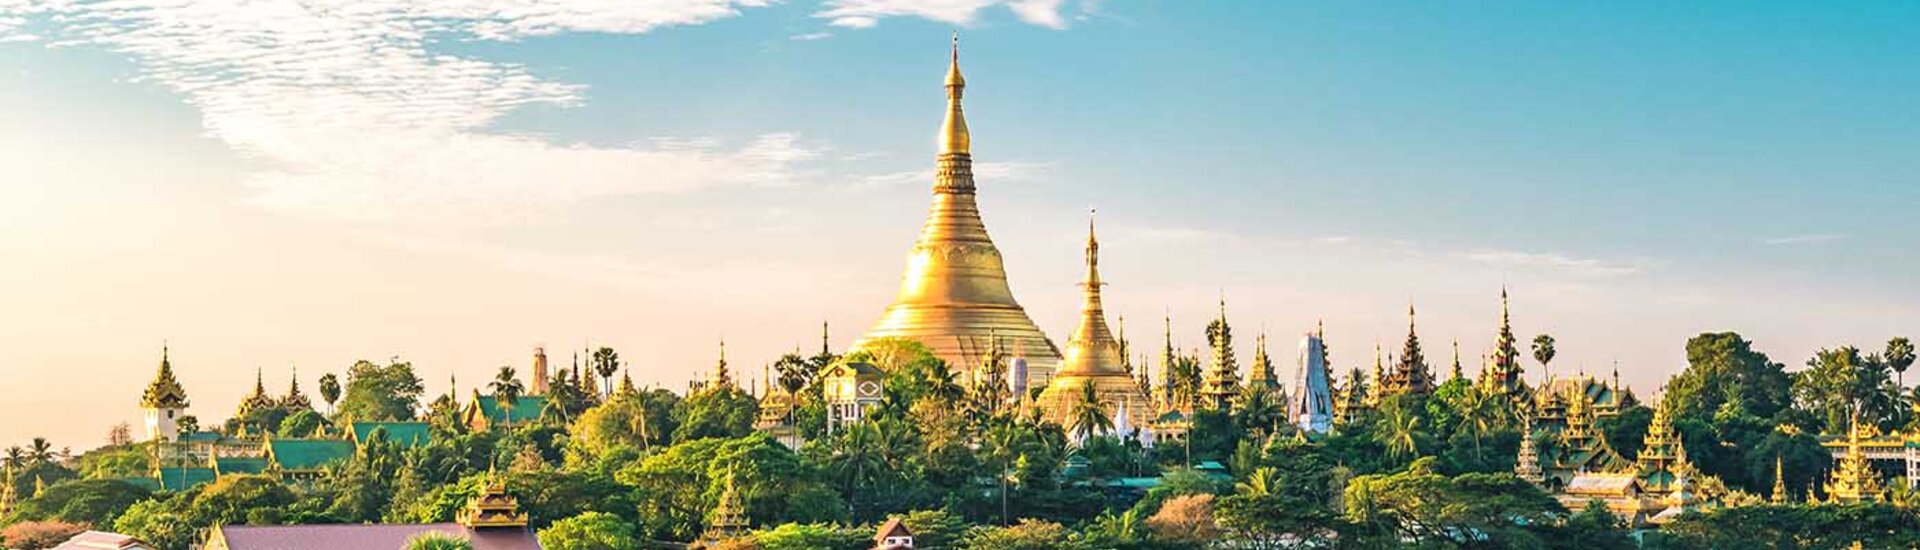 Skyline in Yangon, Myanmar